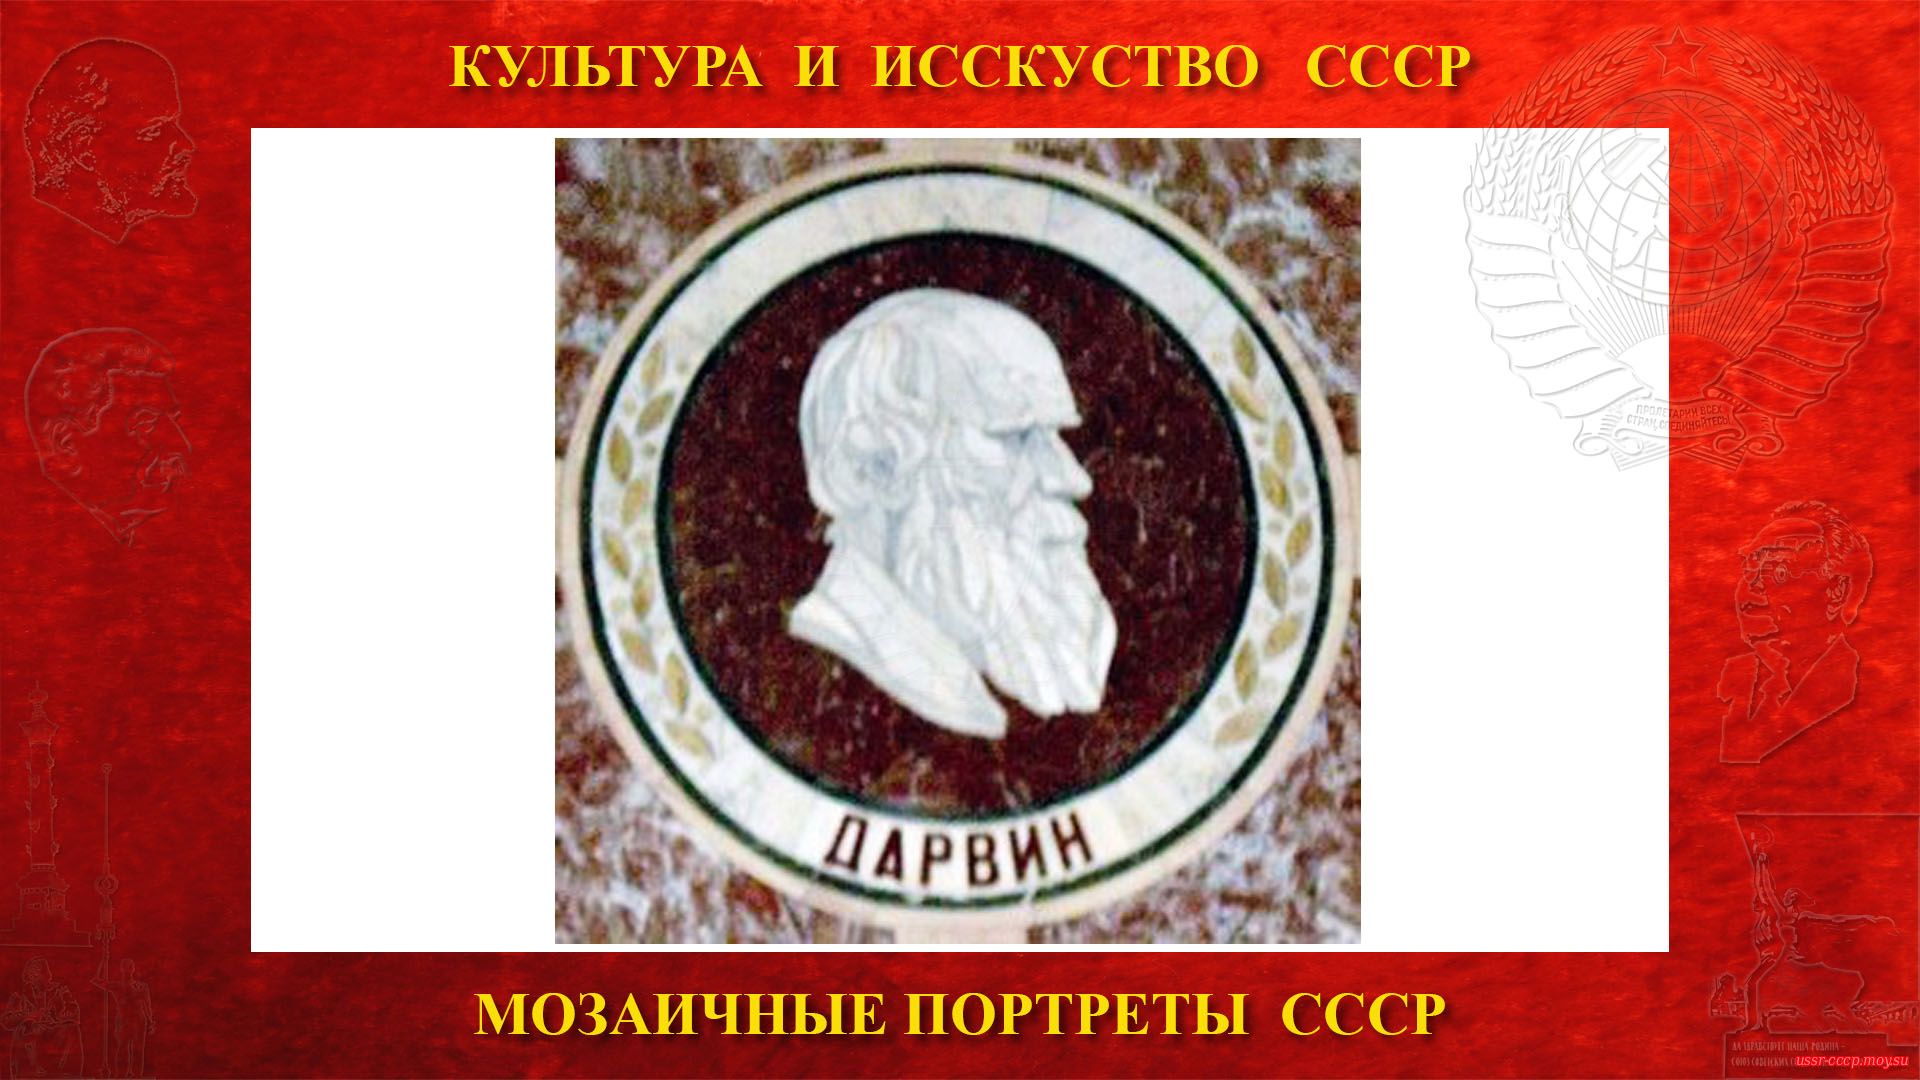 Мозаичный портрет Дарвину Ч.Р. на Ленинских горах в ГЗ МГУ (Москва 1953) (повествование)